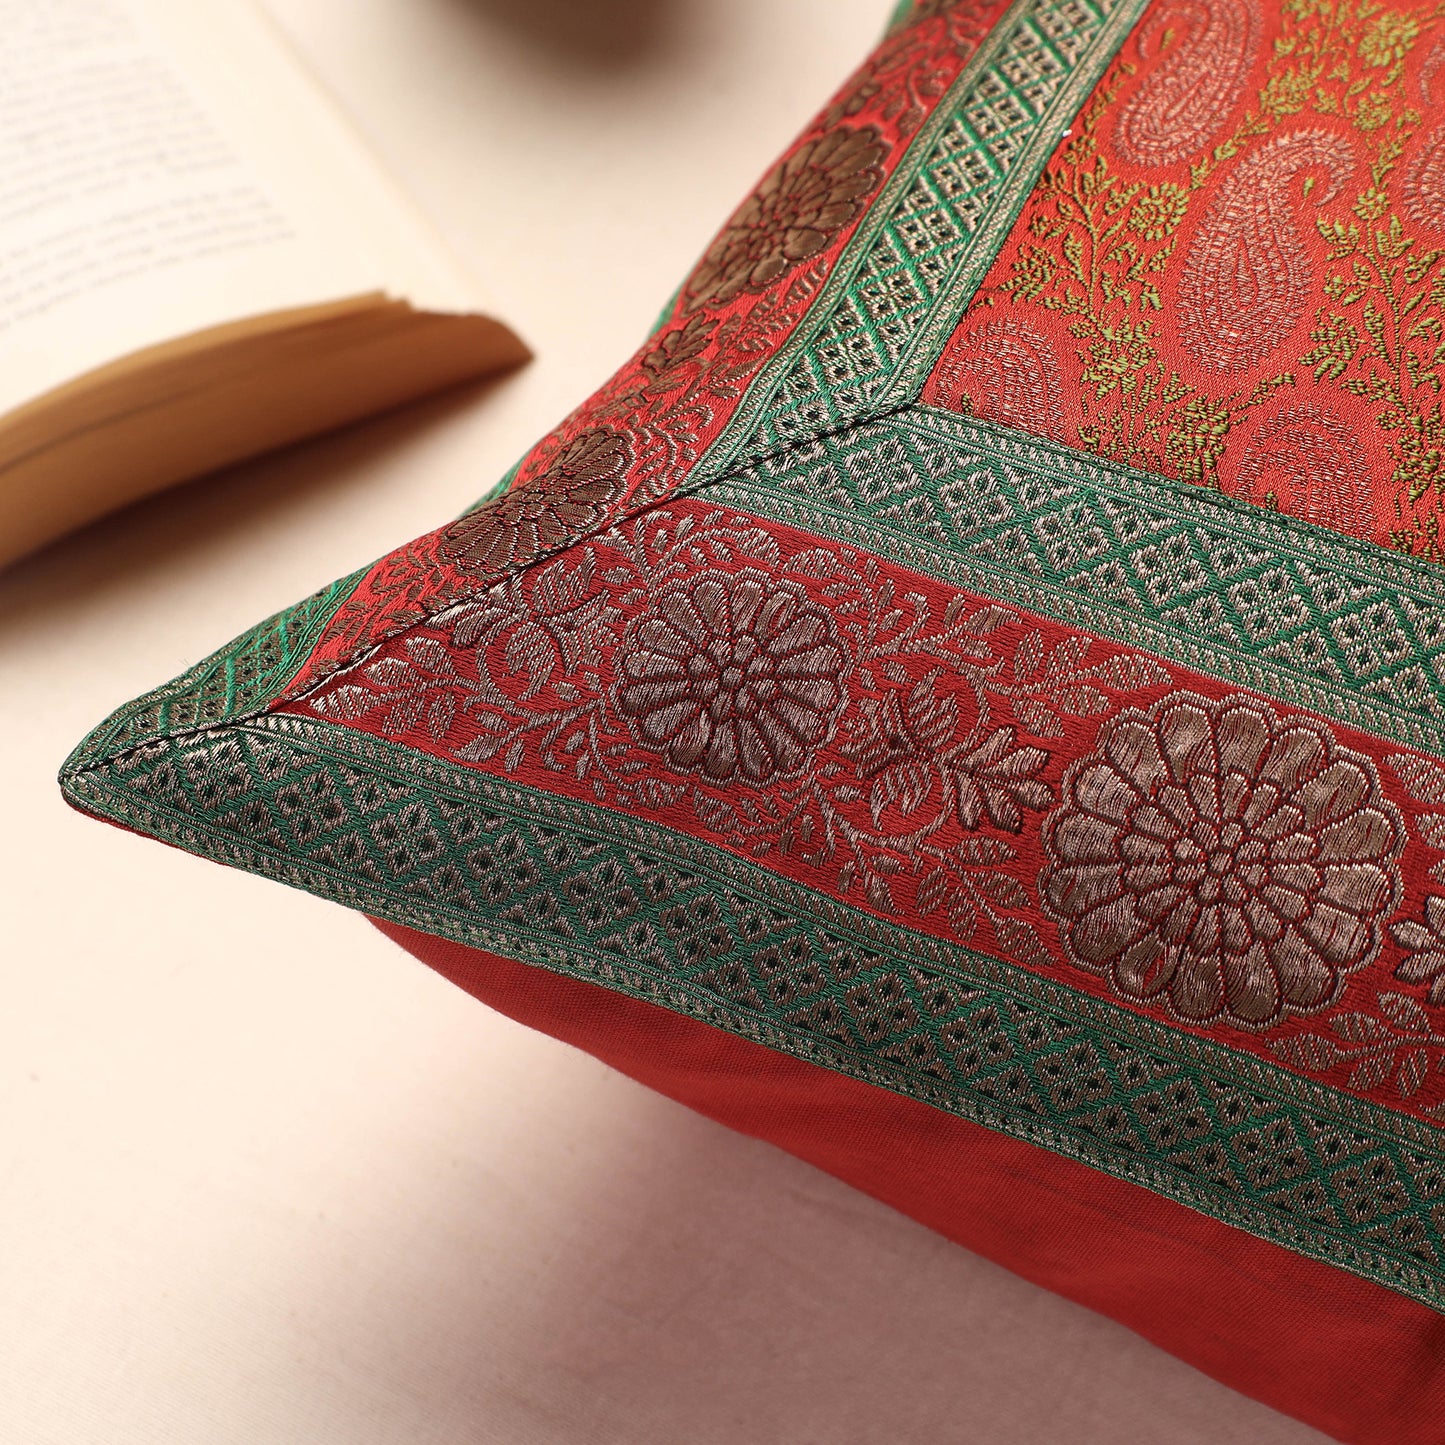 Red - Banarasi Handwoven Silk Zari Cushion Cover (16 x 16 in)